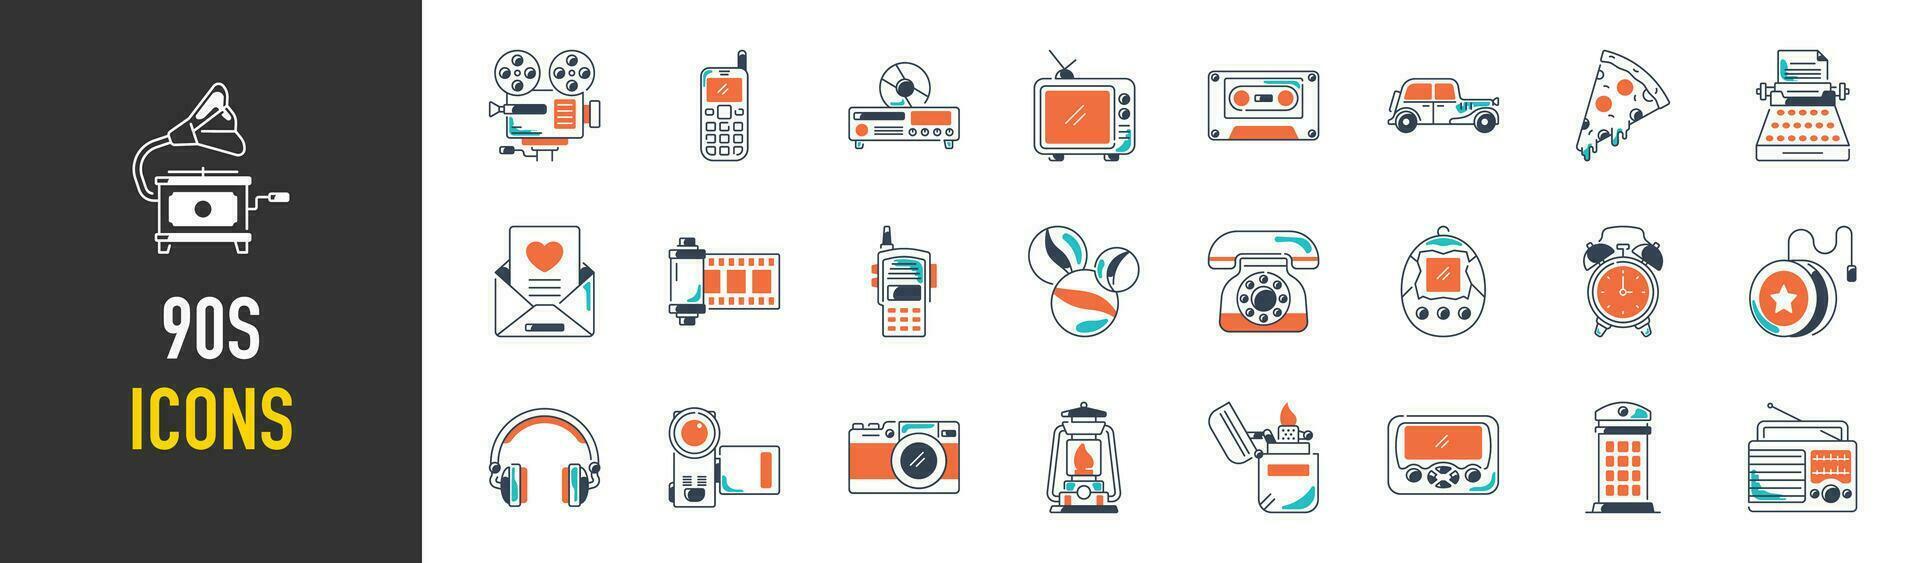 verzameling van nostalgisch retro gadgets spellen en apparaten. vector illustratie. 90s modieus tekenfilm illustraties voor grafisch ontwerpen